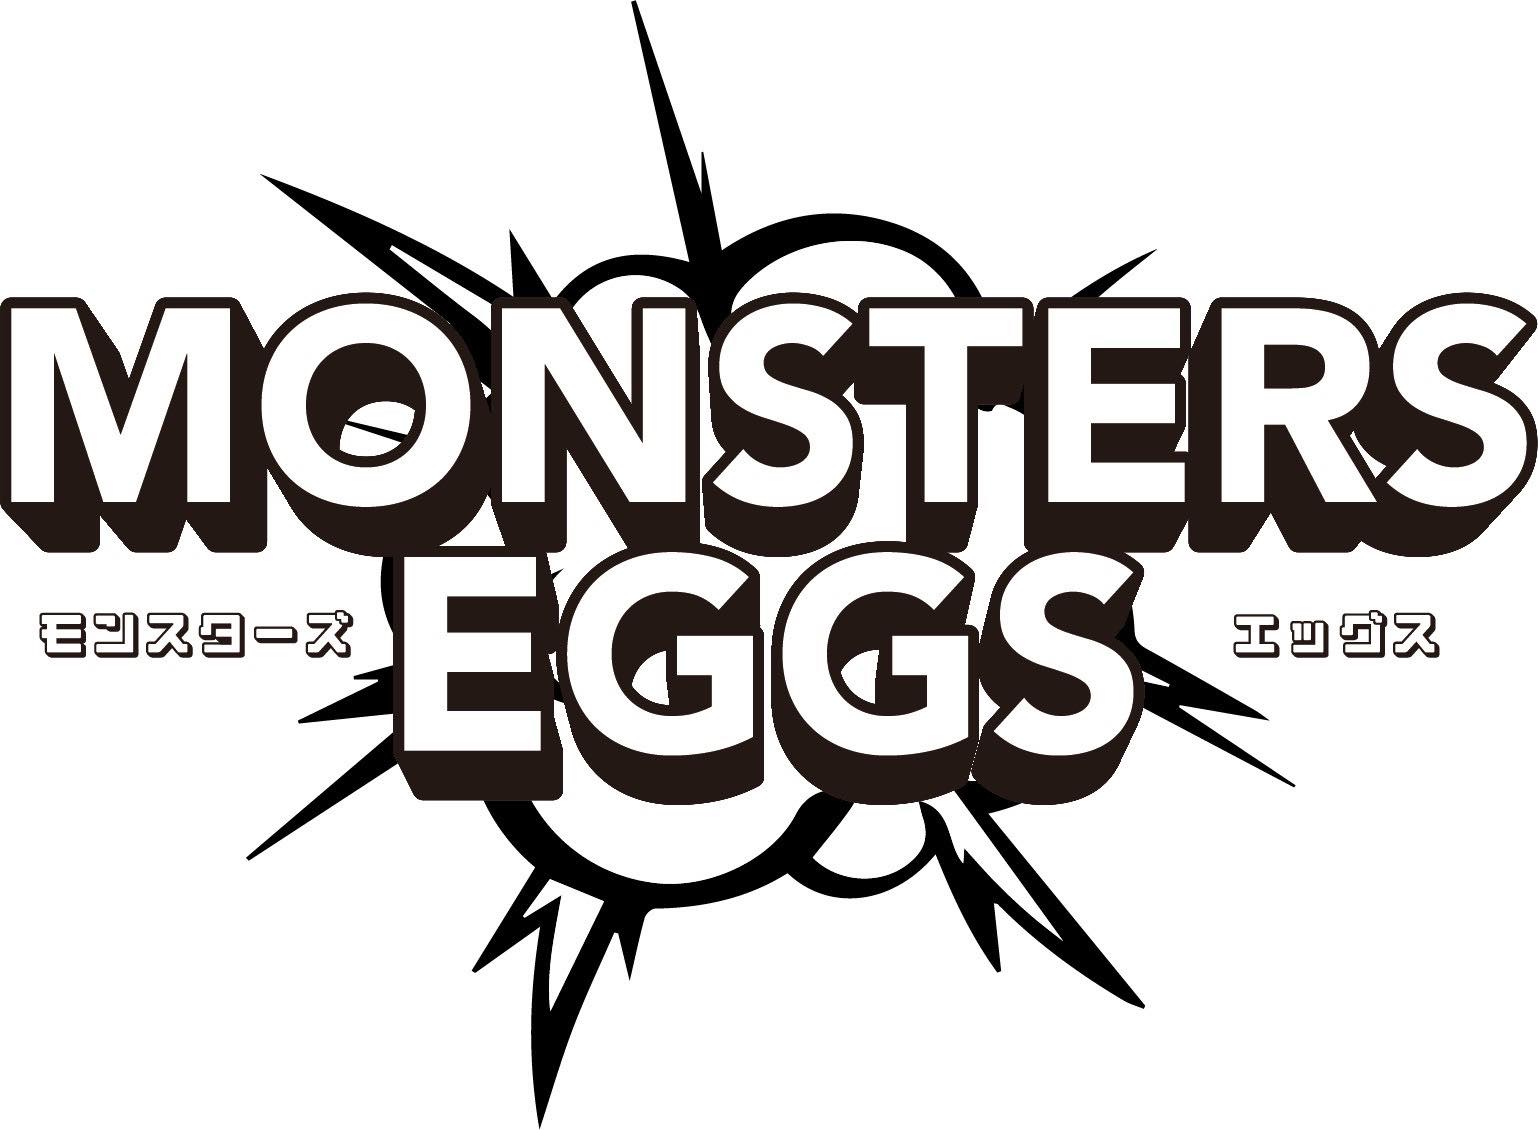 起業家×起業家を志す学生の交流イベント「Monsters×Eggs」に協賛のお知らせ